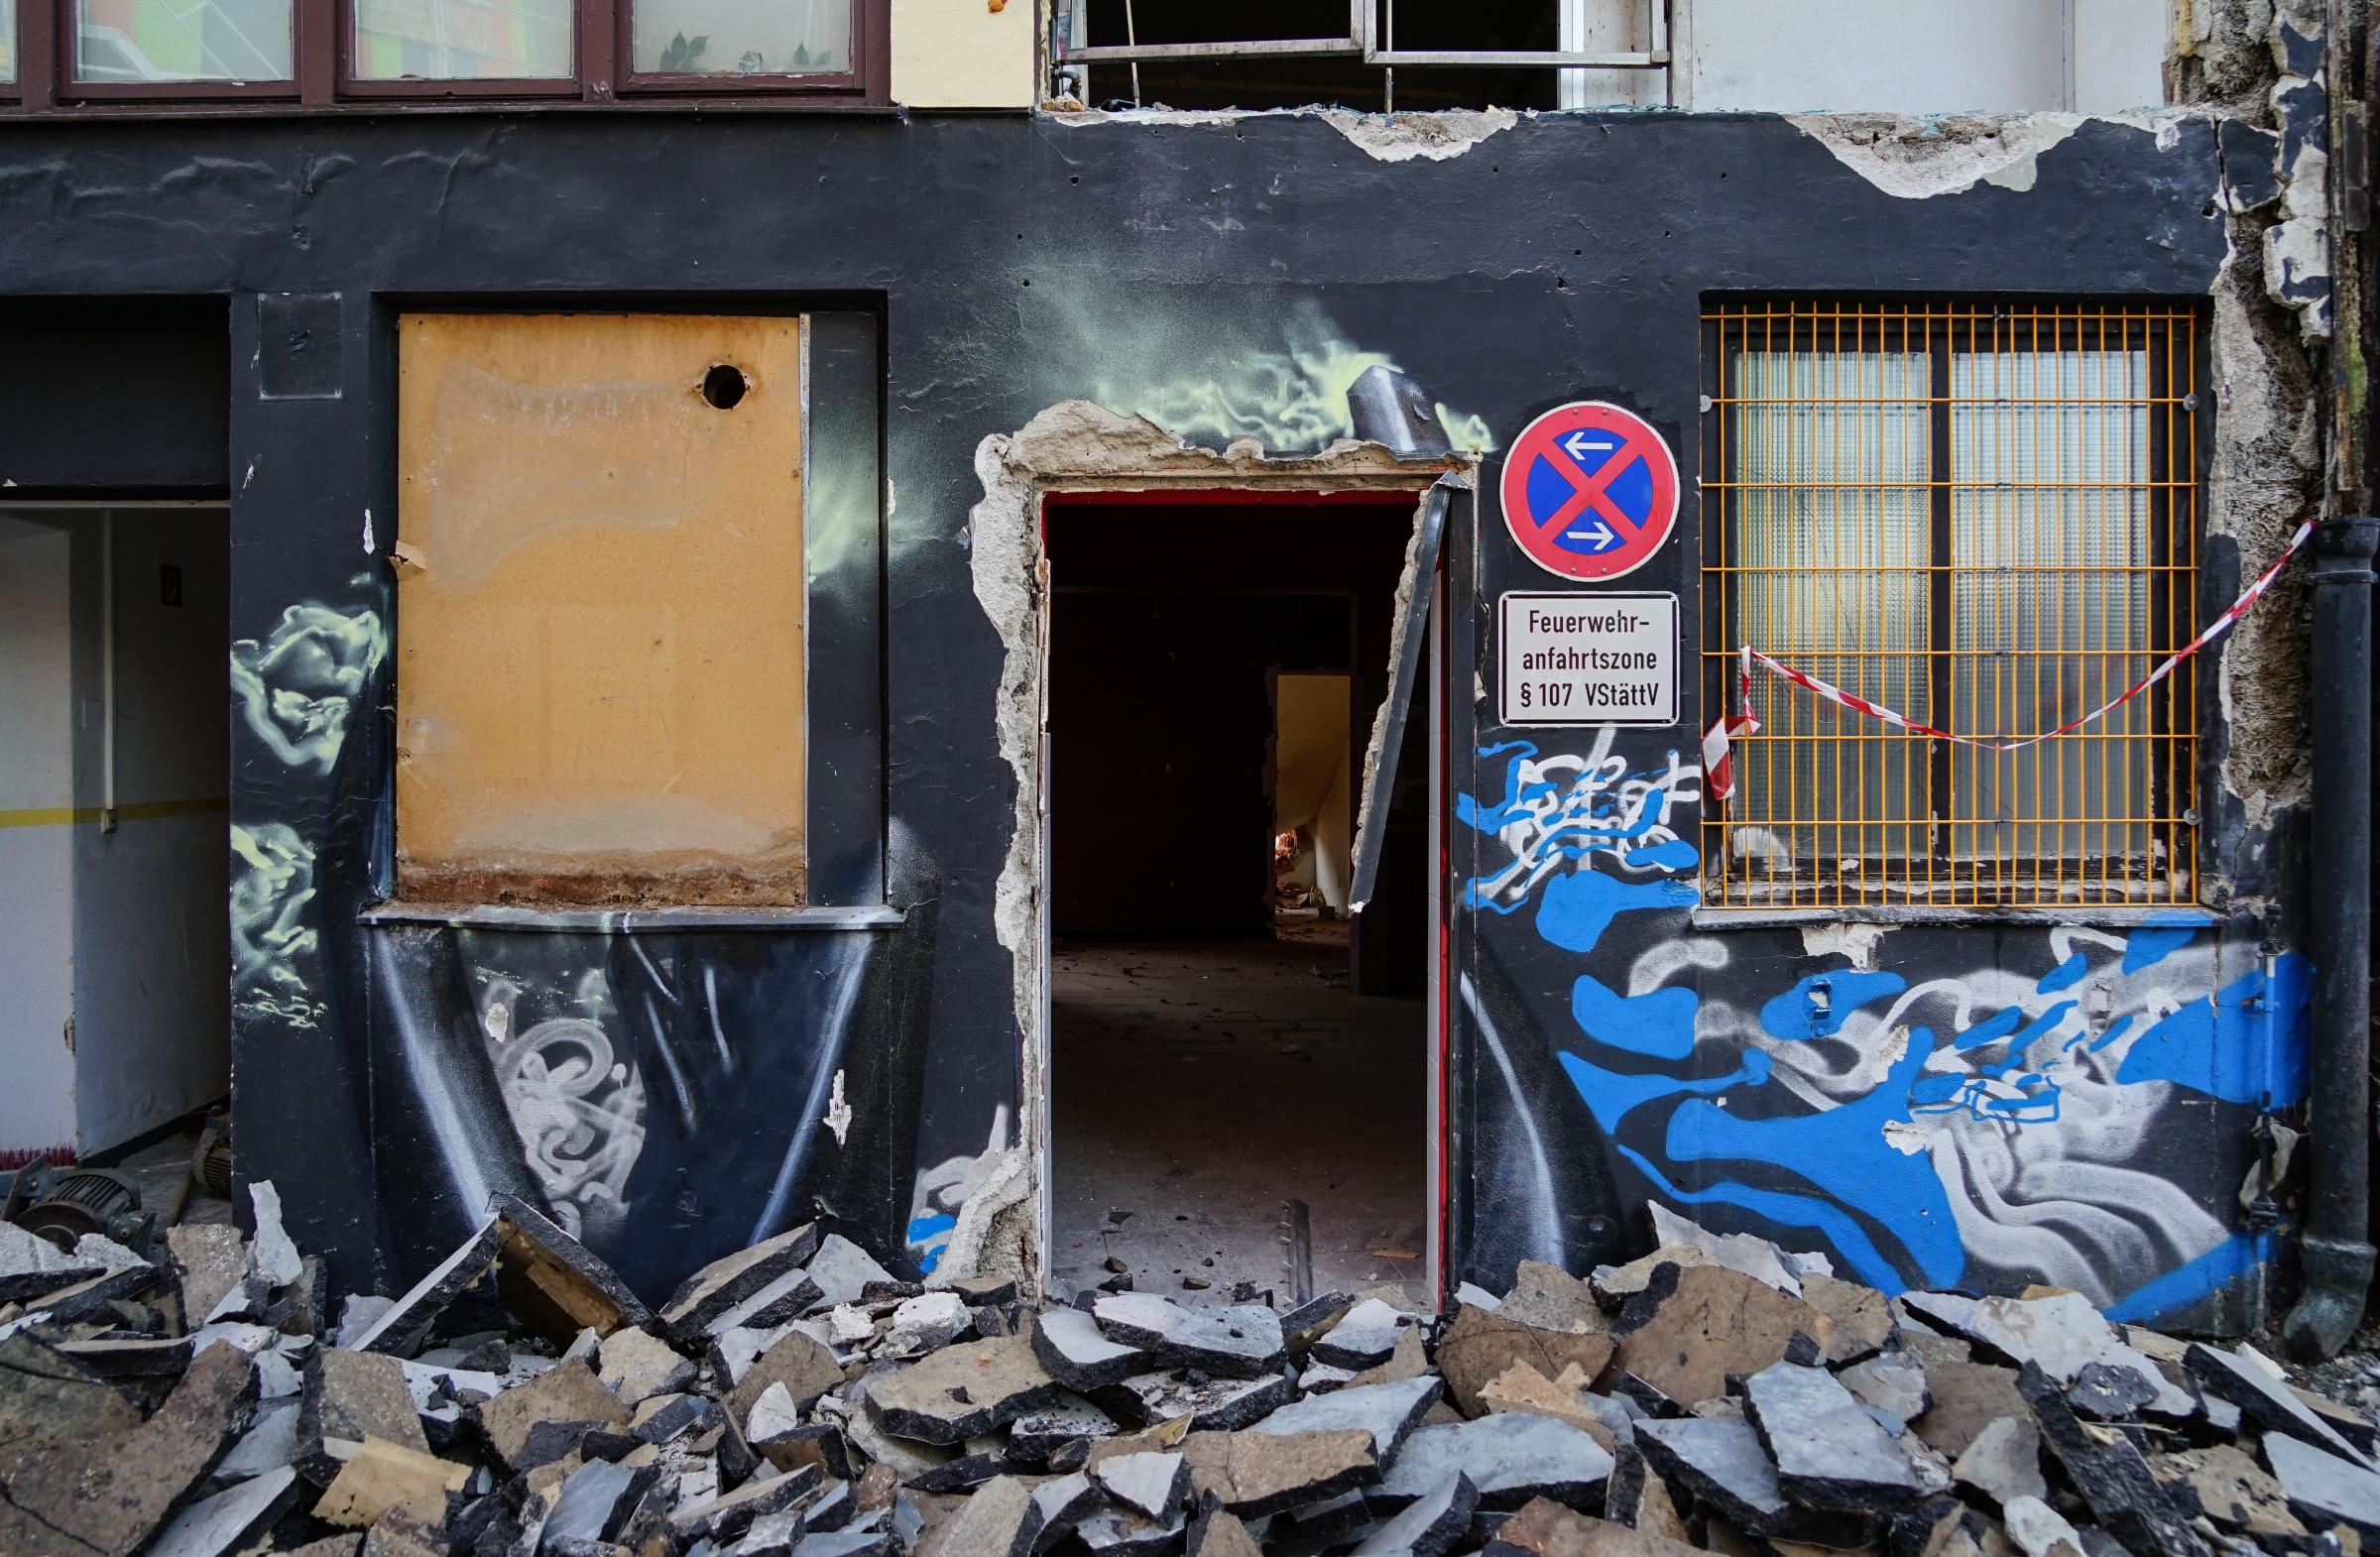 Werksviertel Munich - An exciting urban development project with ephemeral street art